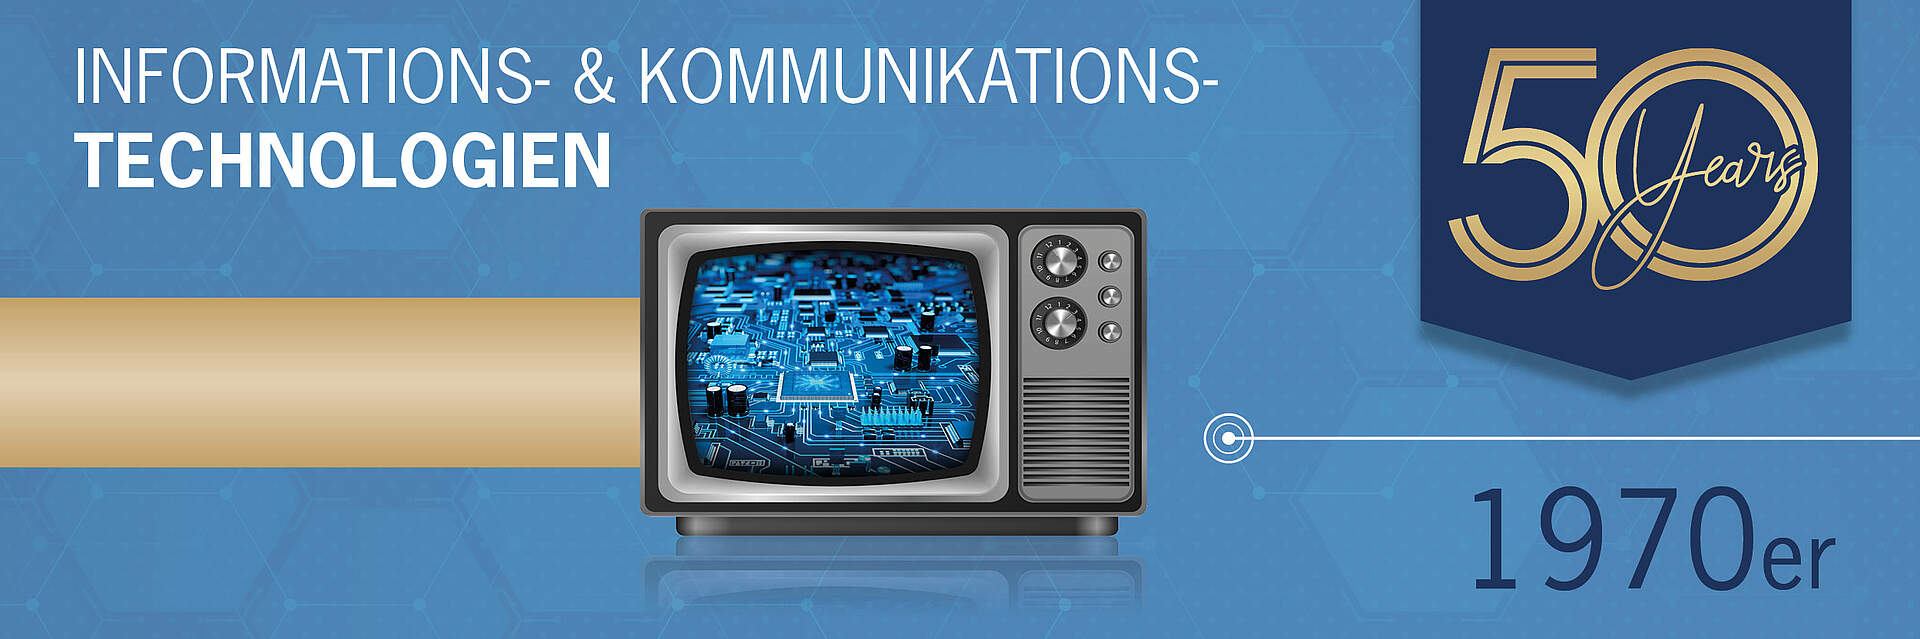 Rutronik Jubiläum 1970 Informations- & Kommunikationstechnologien